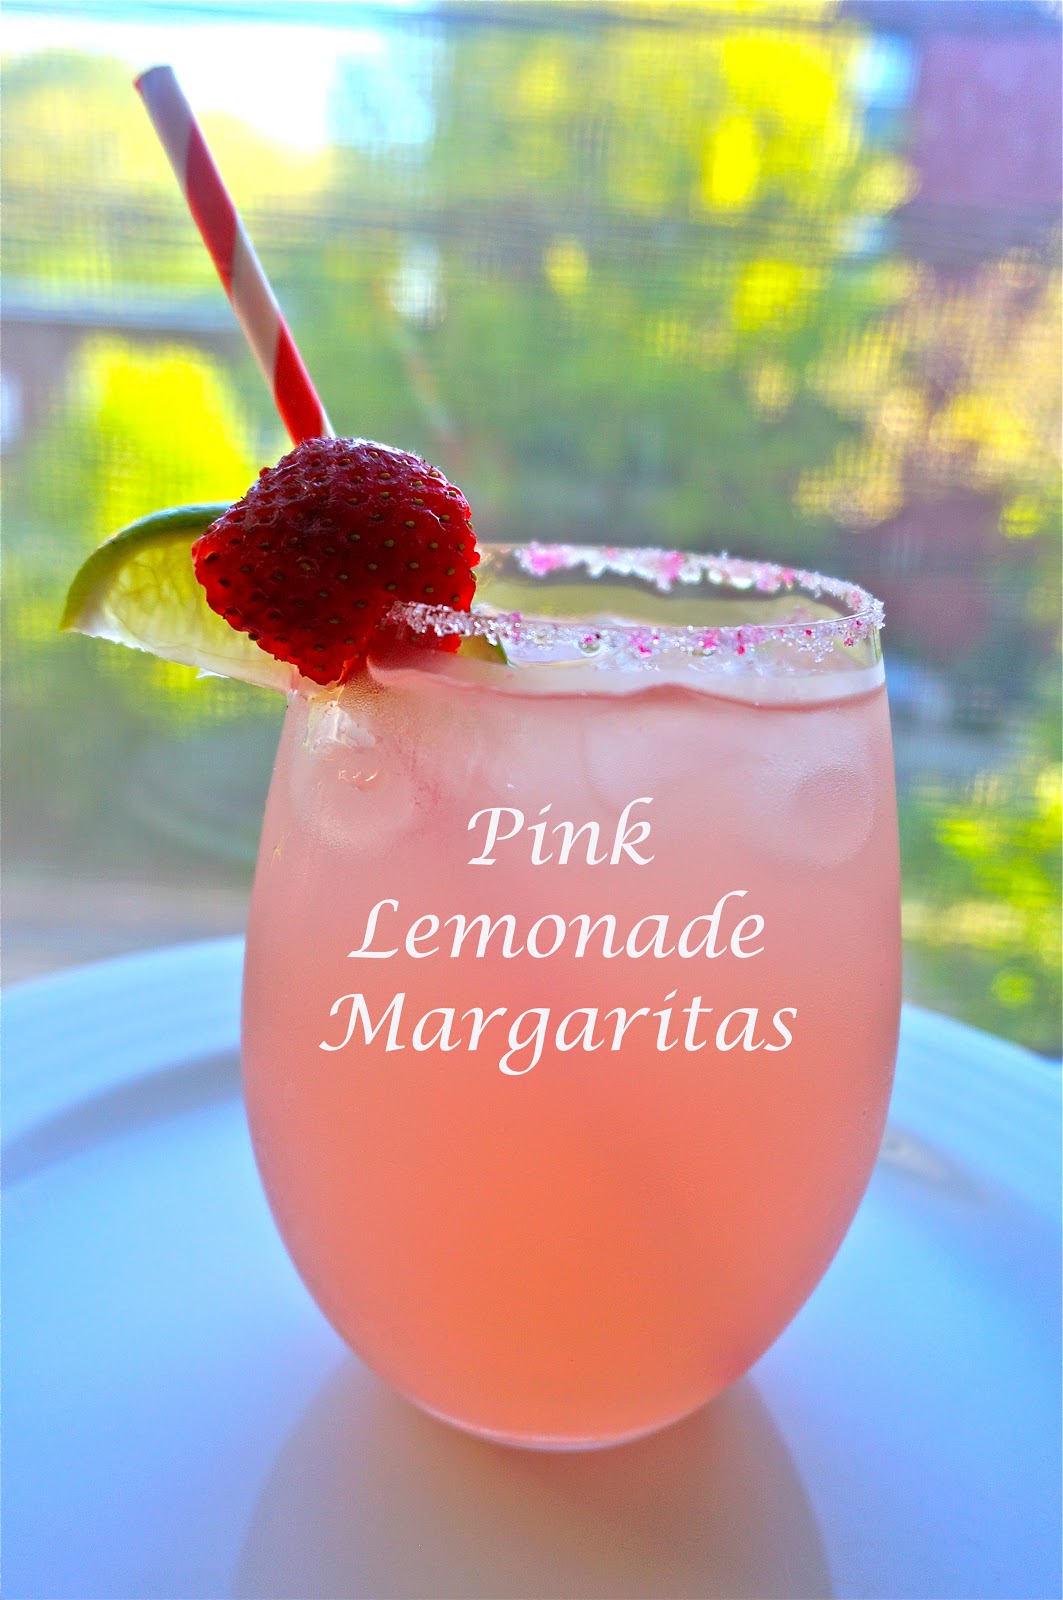 Fashionably Festive: Pink Lemonade Margaritas (For the Girls)